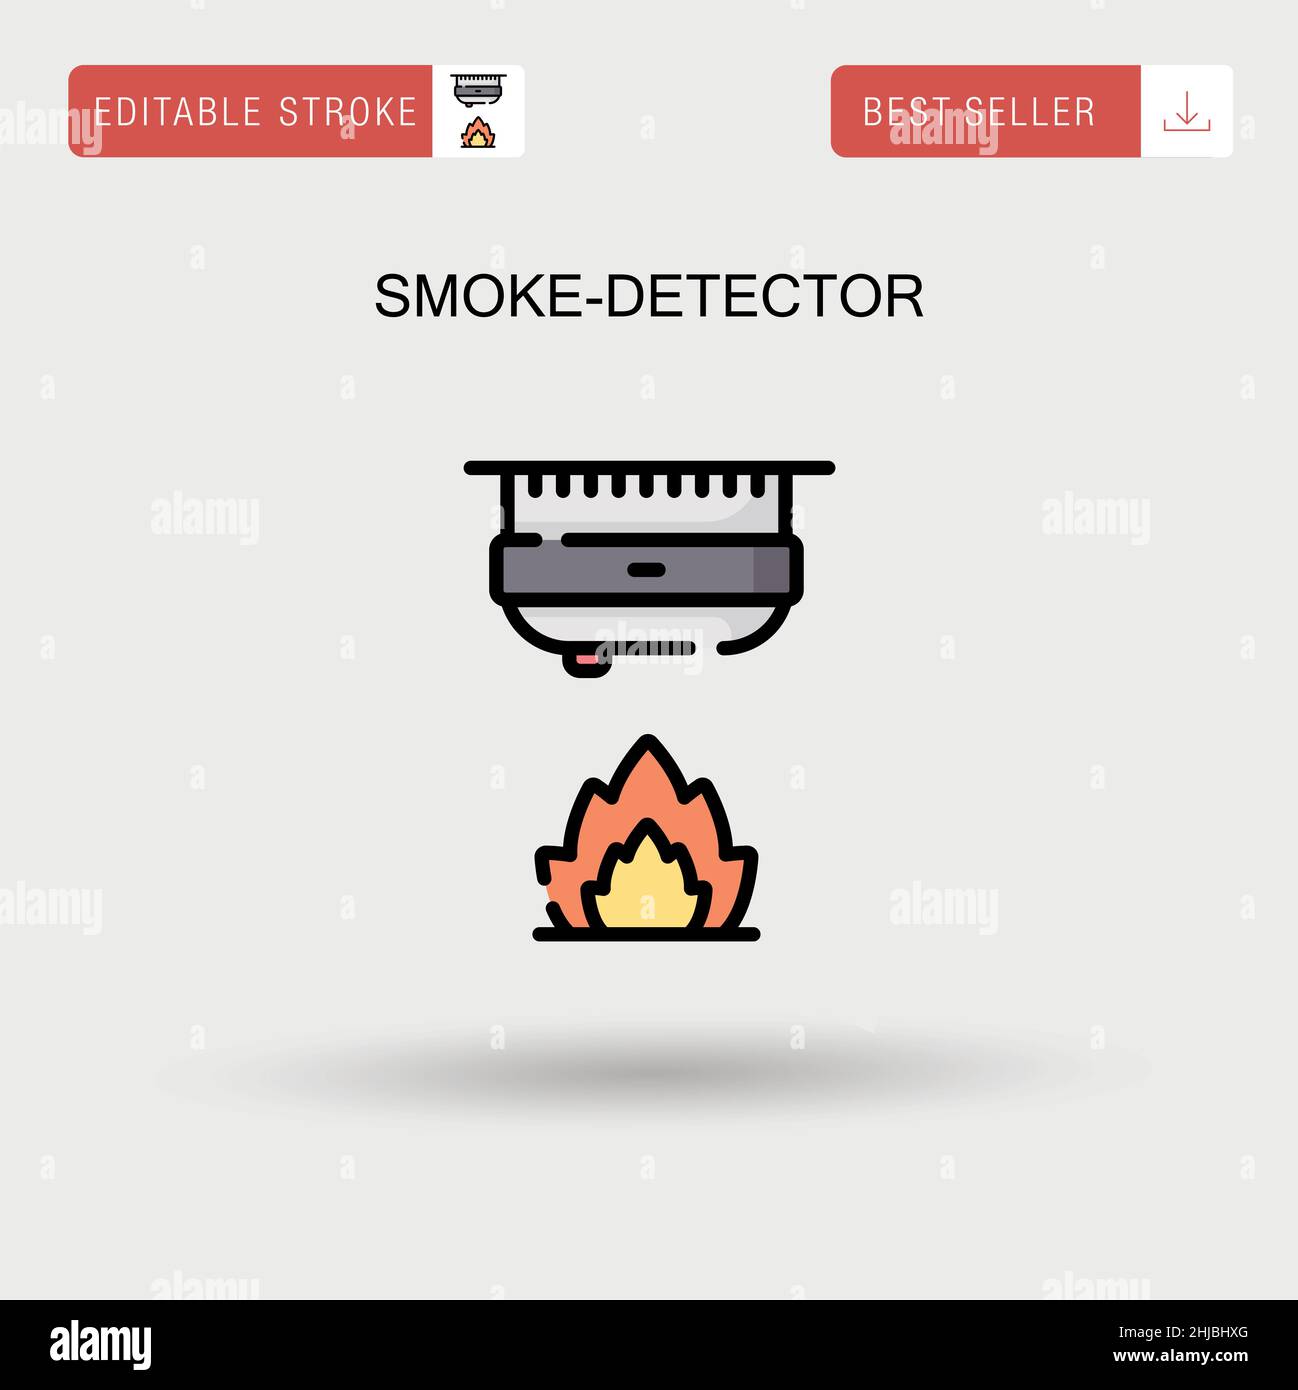 Smoke-detector Simple vector icon. Stock Vector